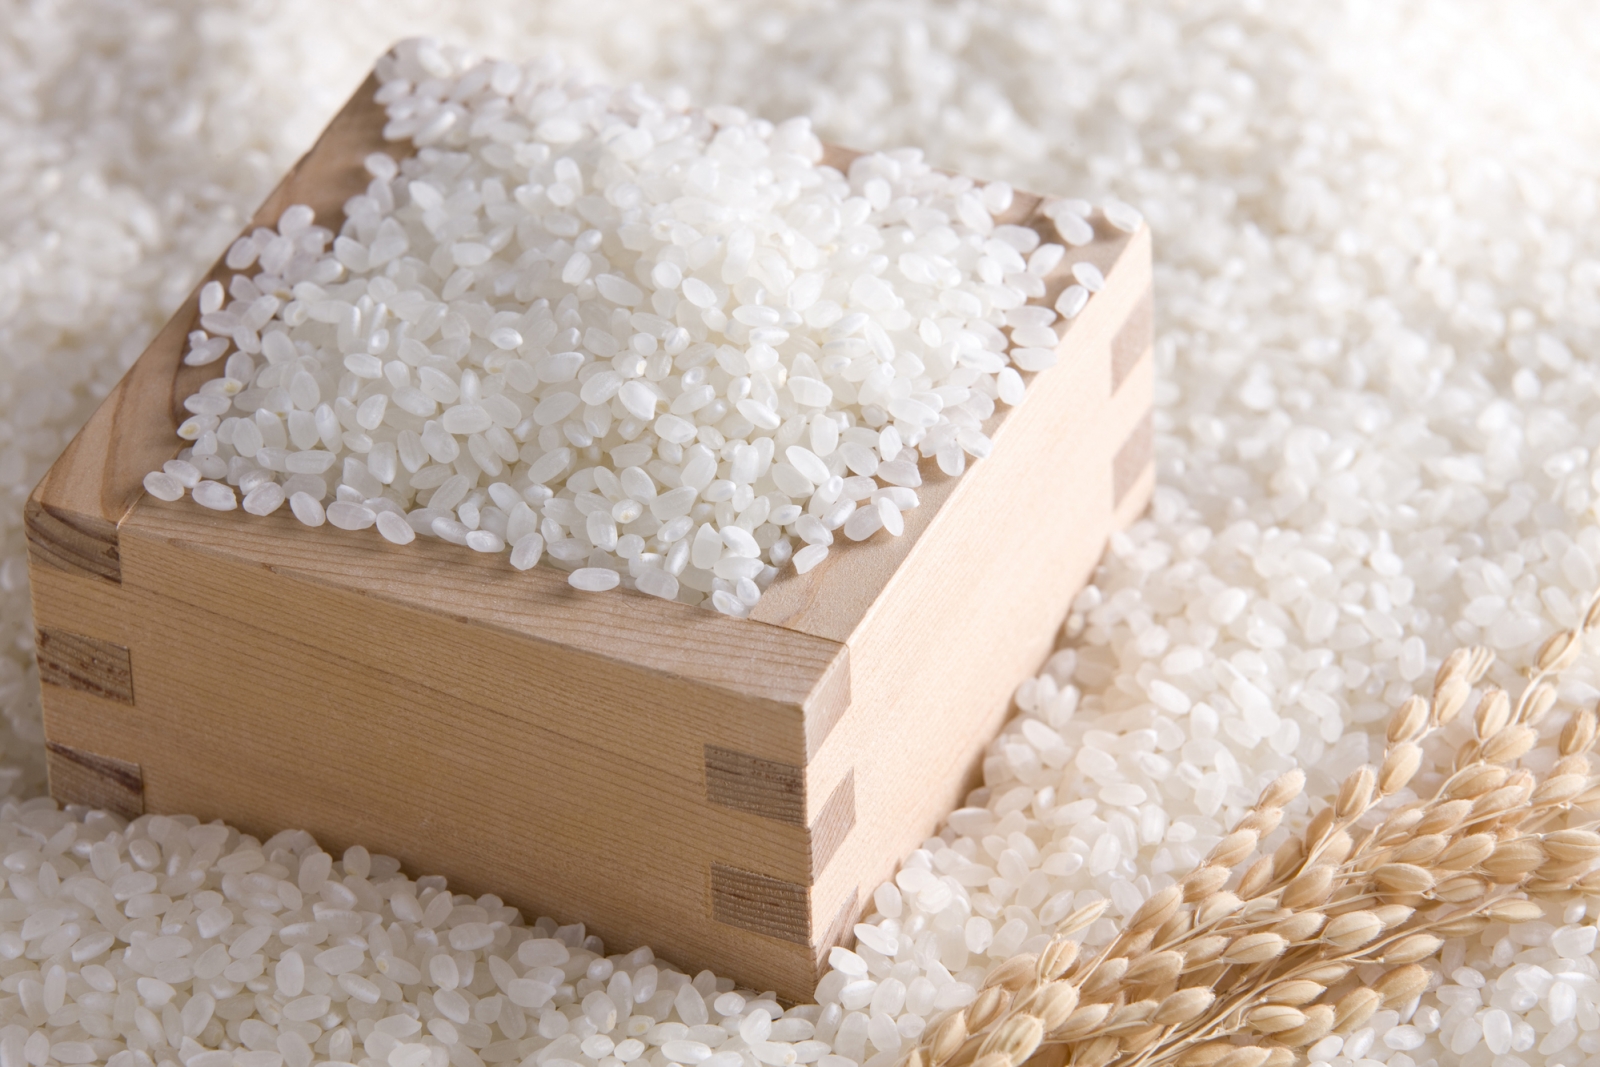 Description: Kết quả hình ảnh cho gạo trắng